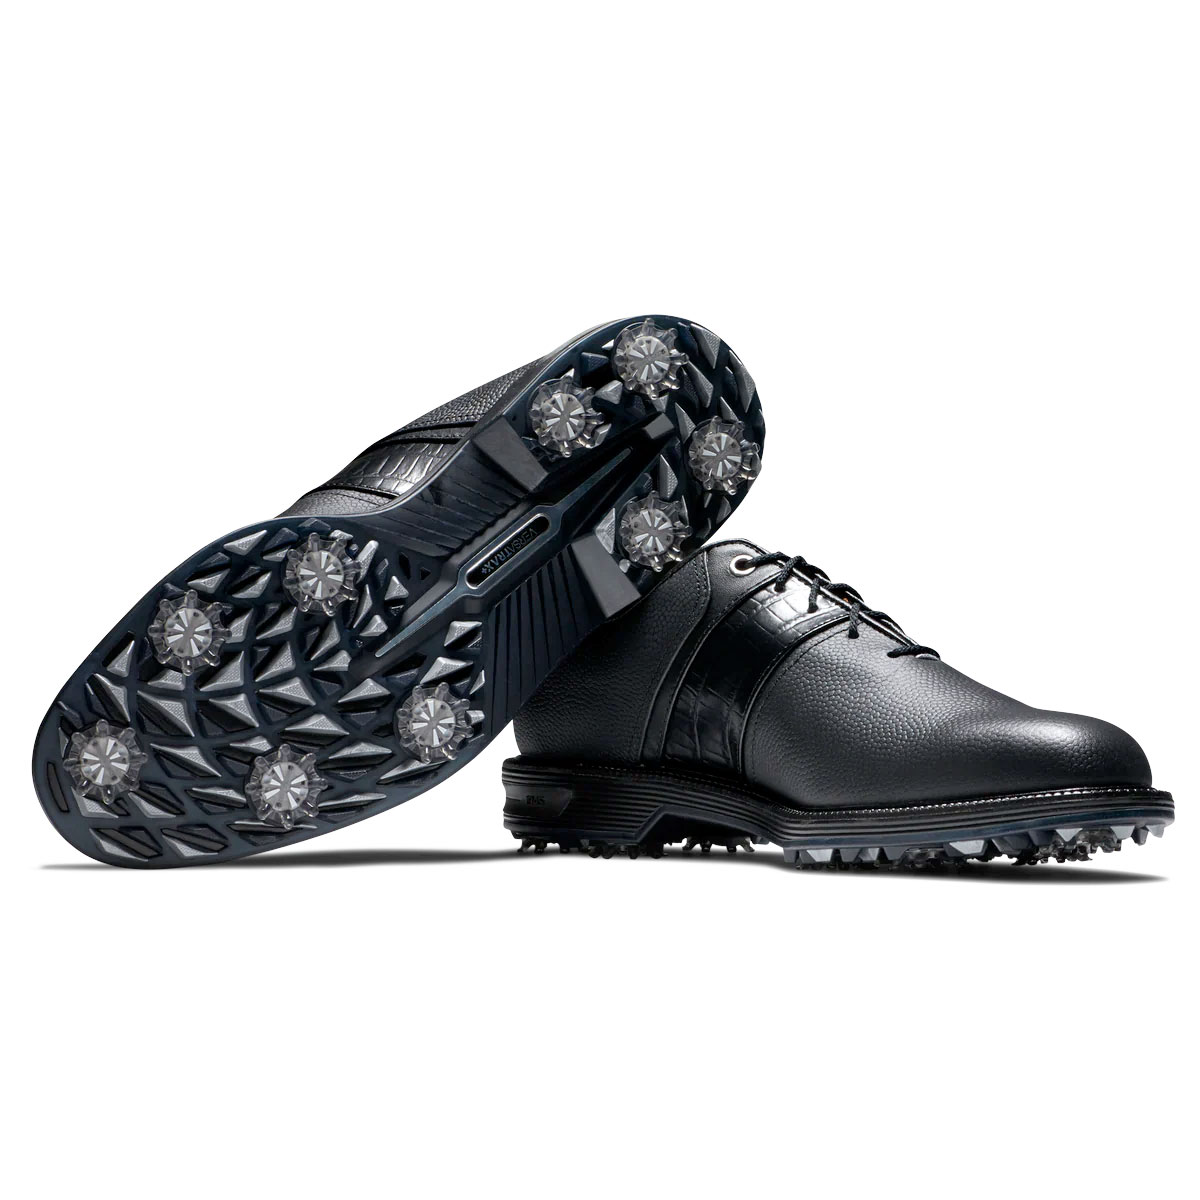 FootJoy DryJoys Premiere Series Packard Mens Golf Shoes  - Black